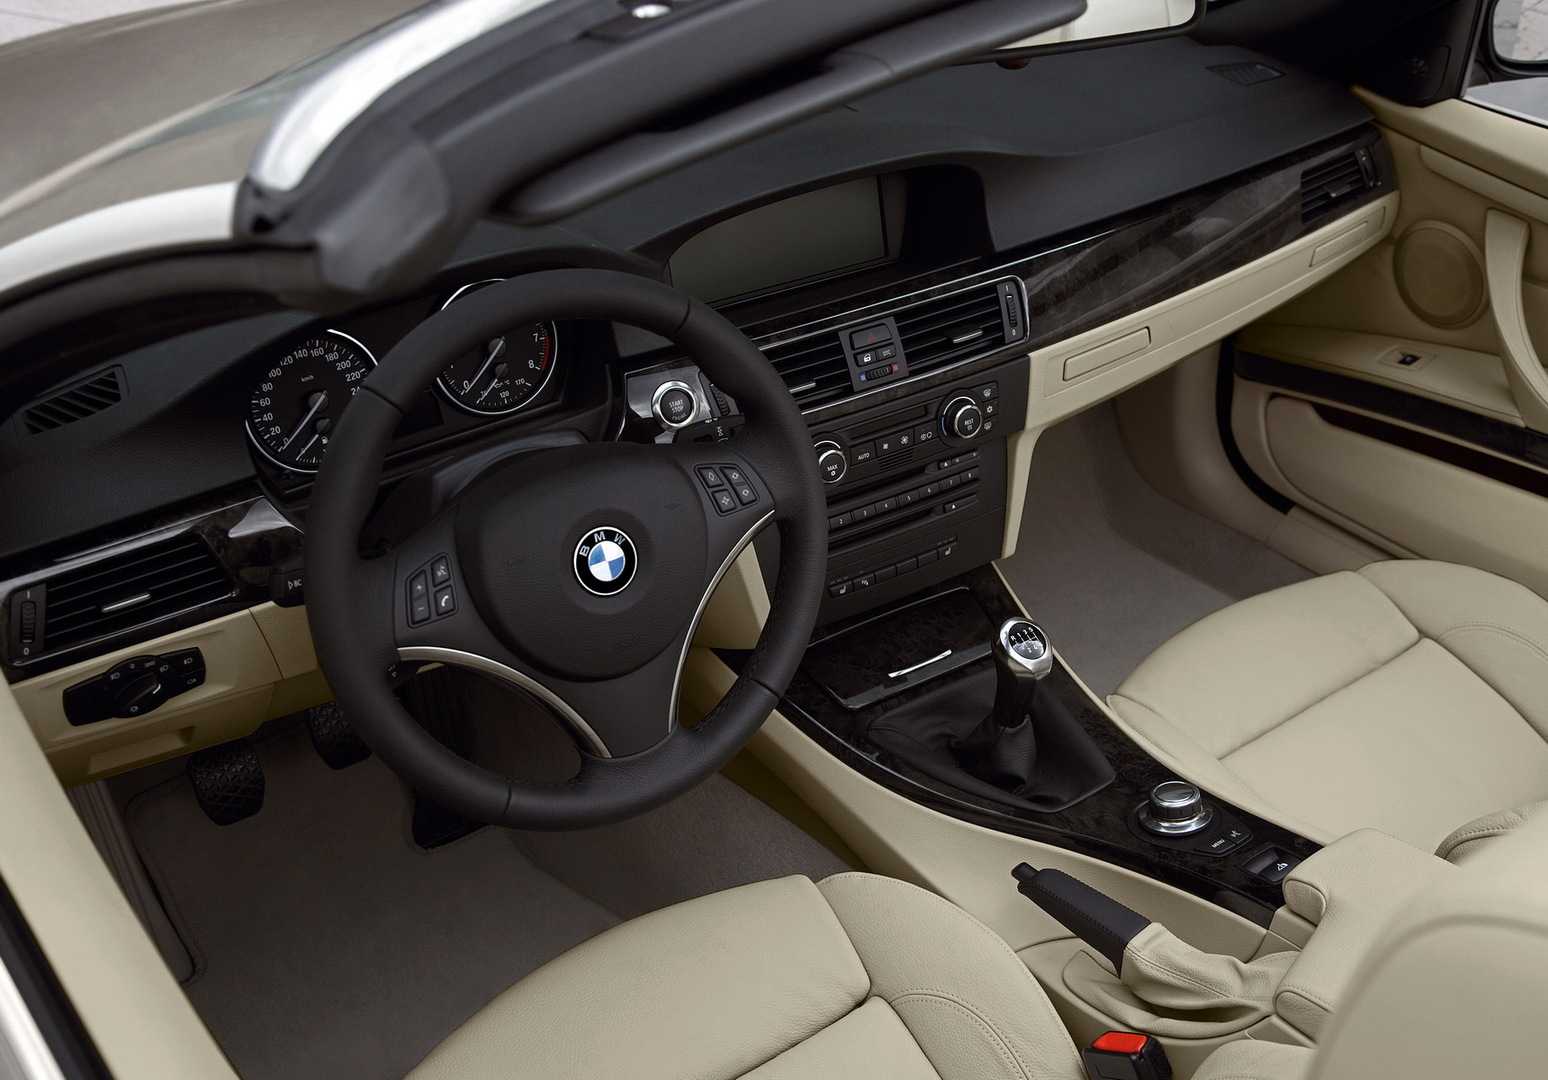 Технические характеристики BMW 320i 2012-2015 в автокаталоге CarExpertru Размеры и масса BMW 320i 2012-2015 Клиренс BMW 3-series Мощность двигателя BMW 320i 2012-2015 Расход топлива BMW 320i 2012-2015 Максимальная скорость BMW 320i 2012-2015 Подвеска BMW